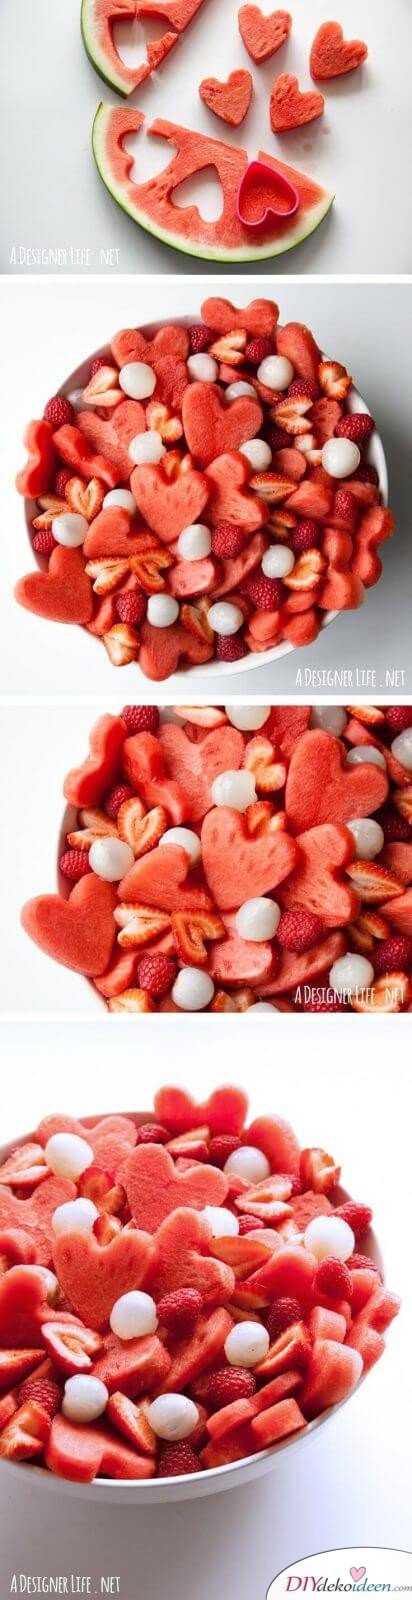 Leckere Rezepte zum Valentinstag - Obstsalat mit Melonen-Herzen